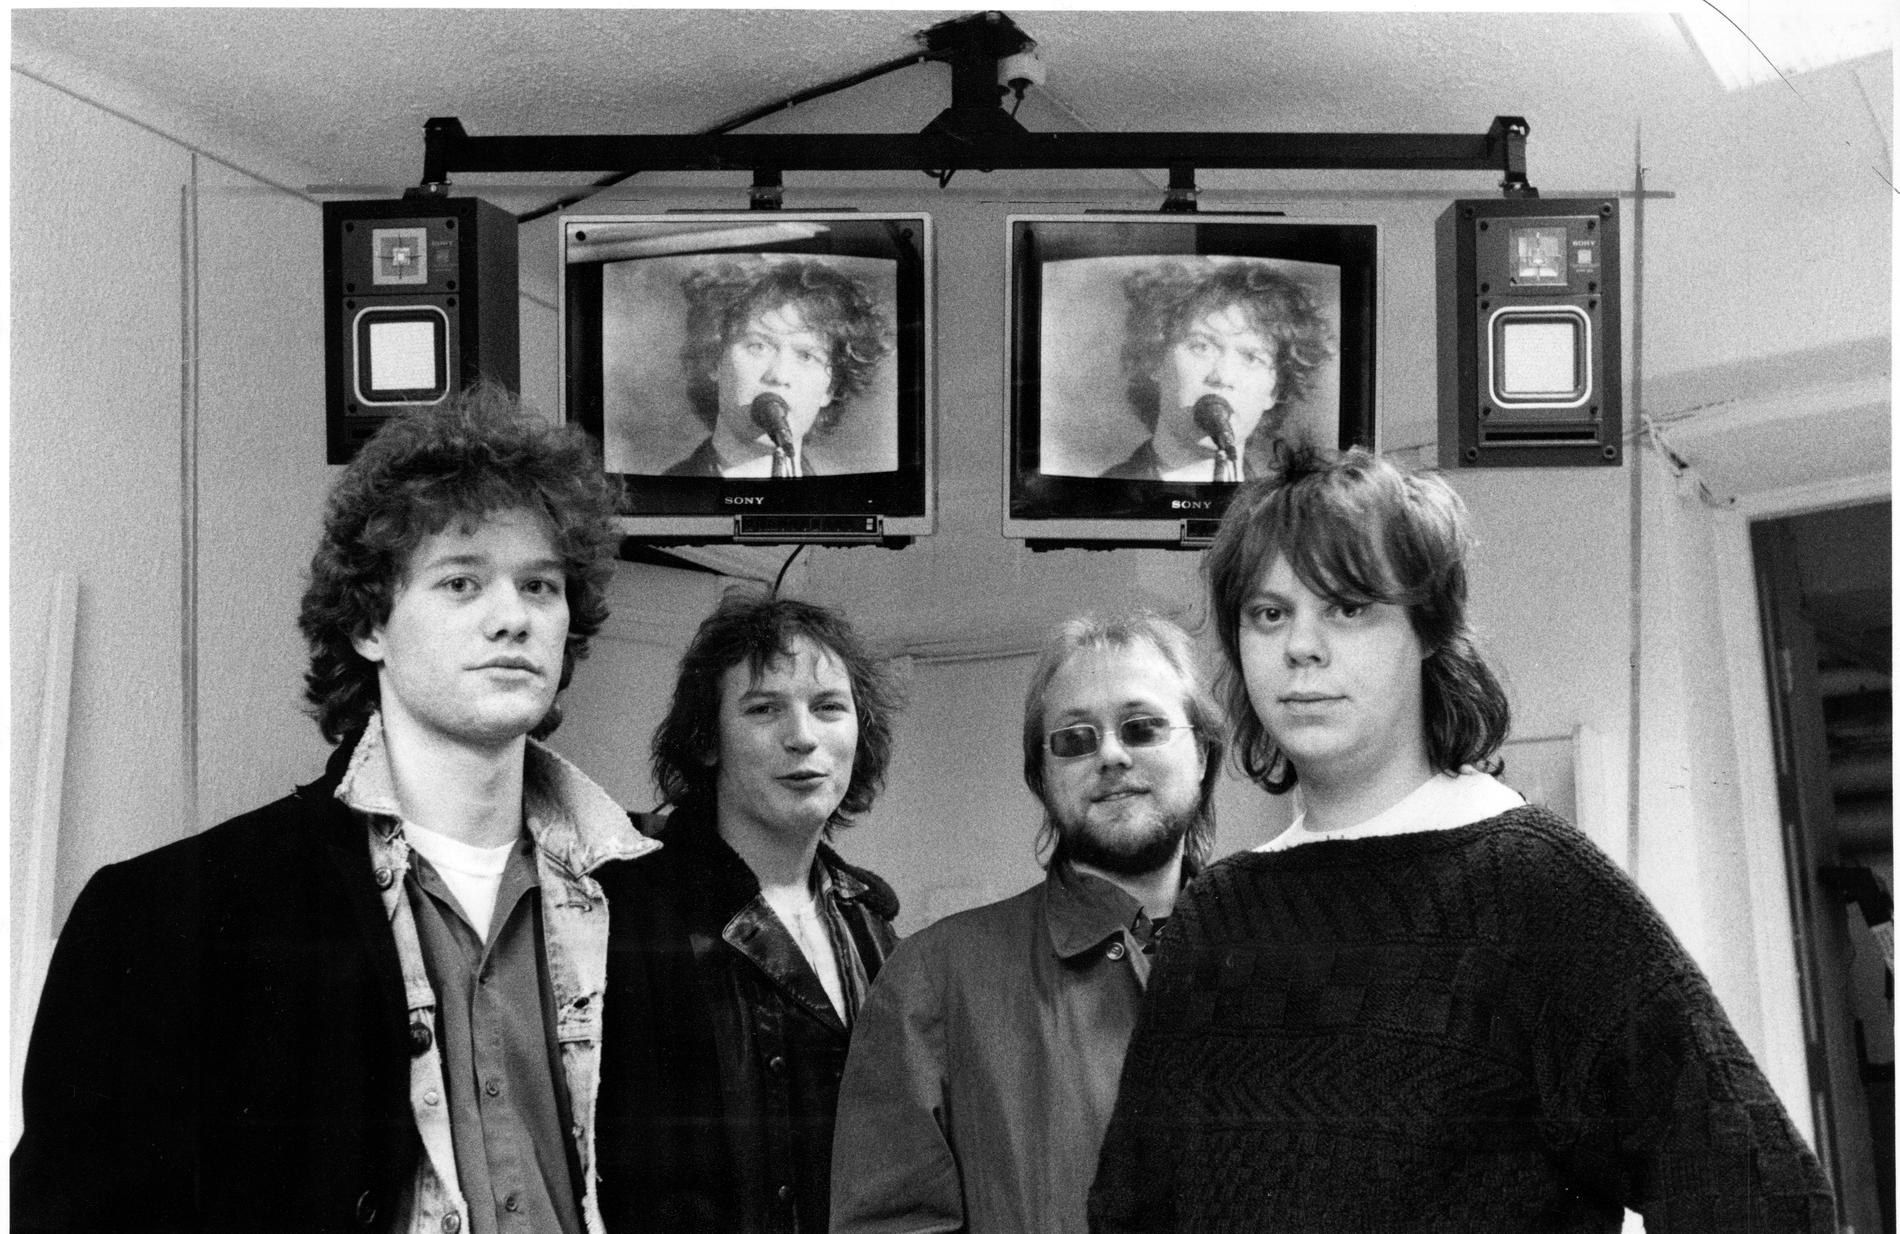 Två år efter att The Nomads släppte ”Where the wolf bane blooms”, det vill säga 1985, såg de ut så här. Från vänster Nix Vahlberg, Tony Carlsson, Ed Johnson och Hasse Östlund.